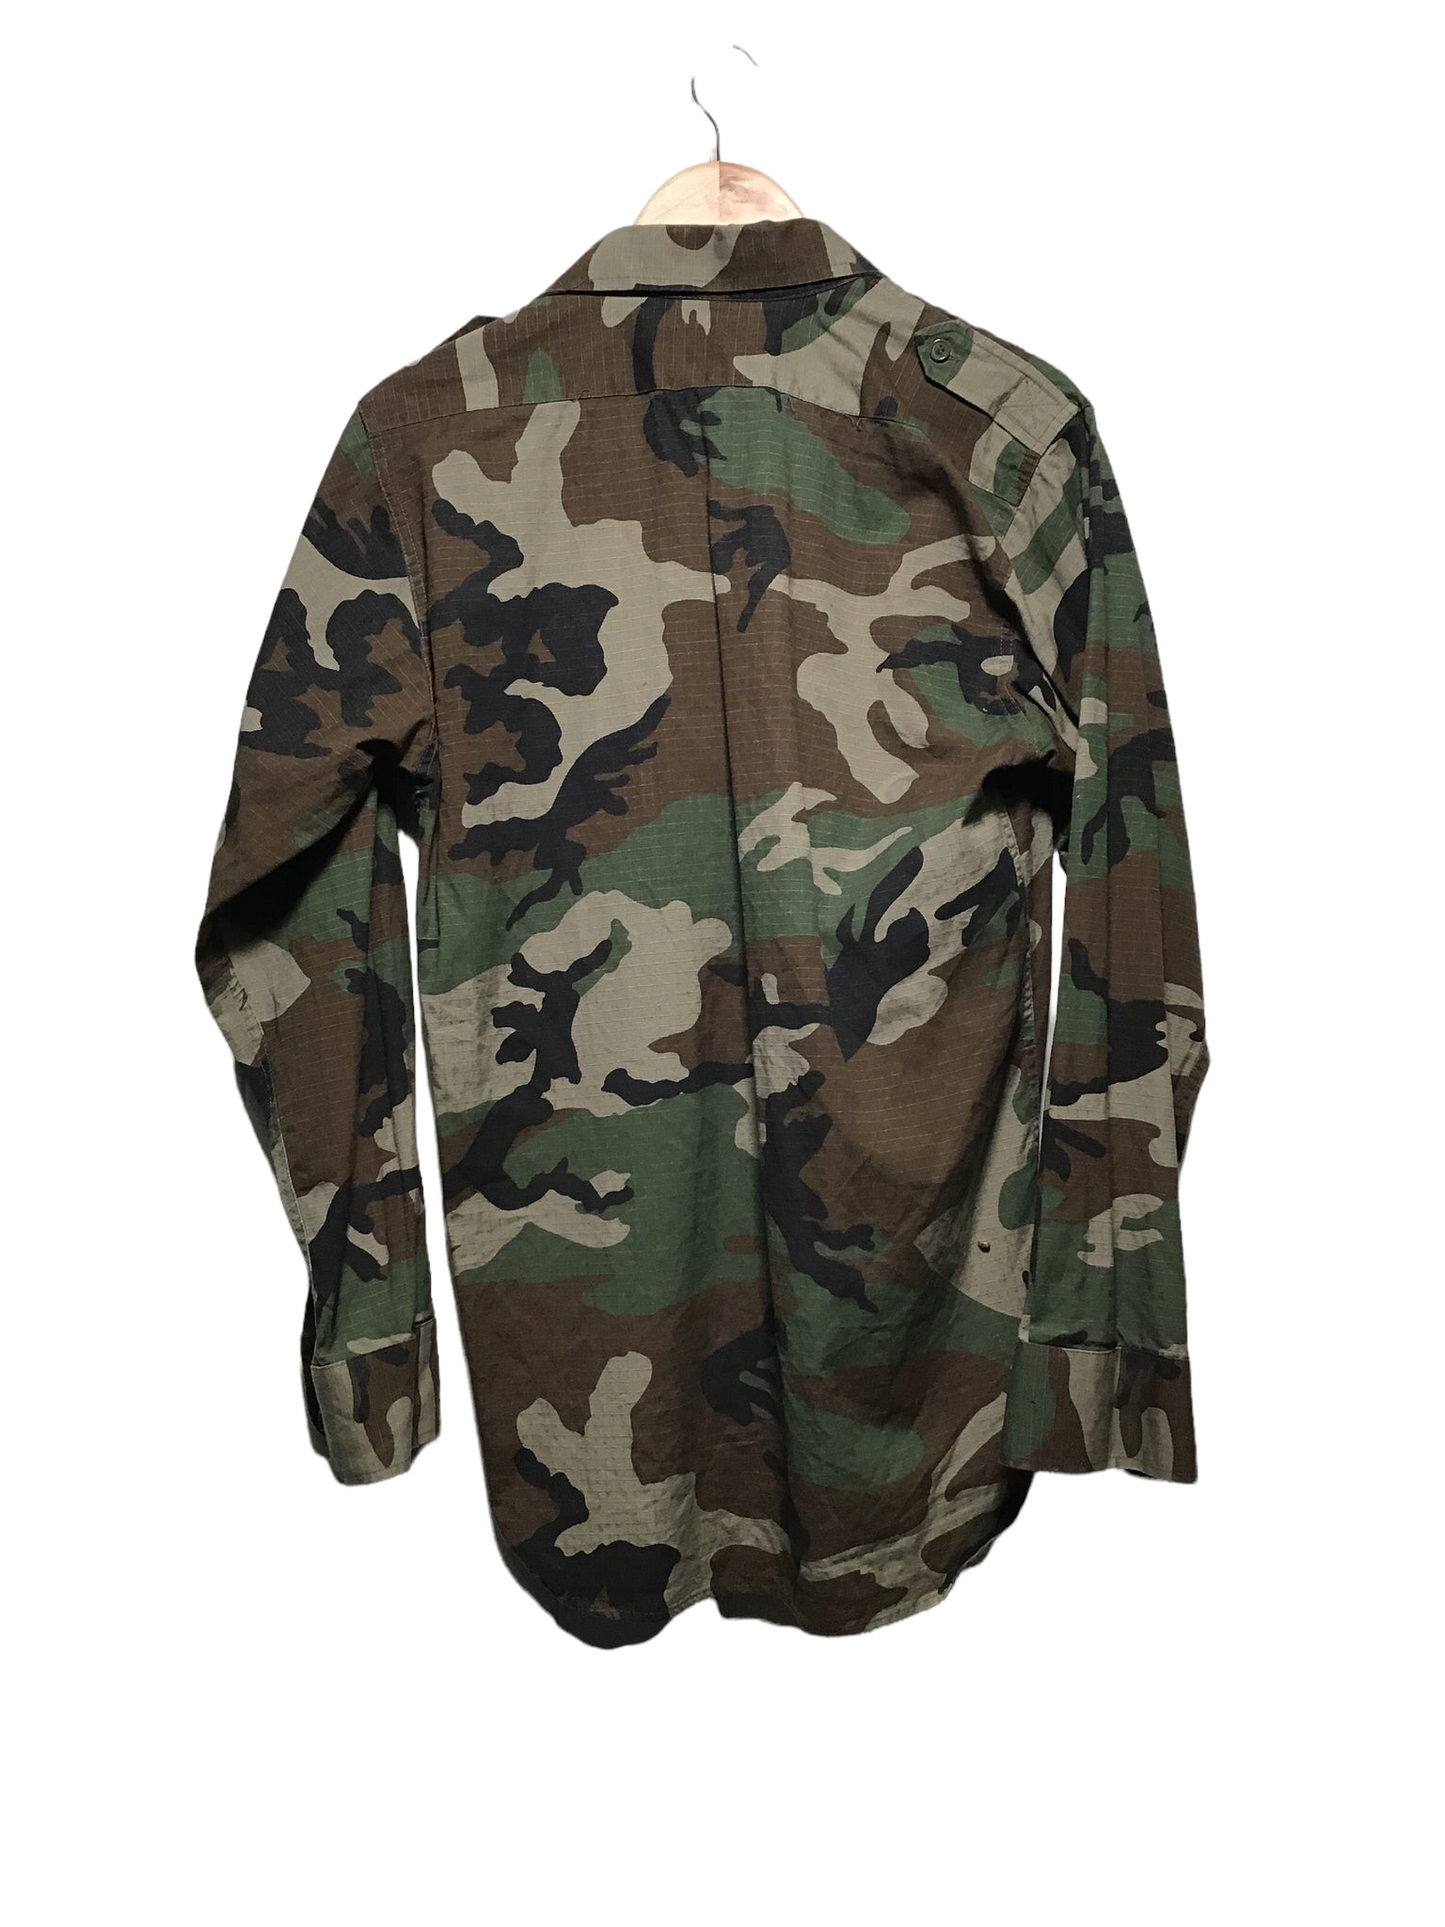 Army Jacket (Size S)